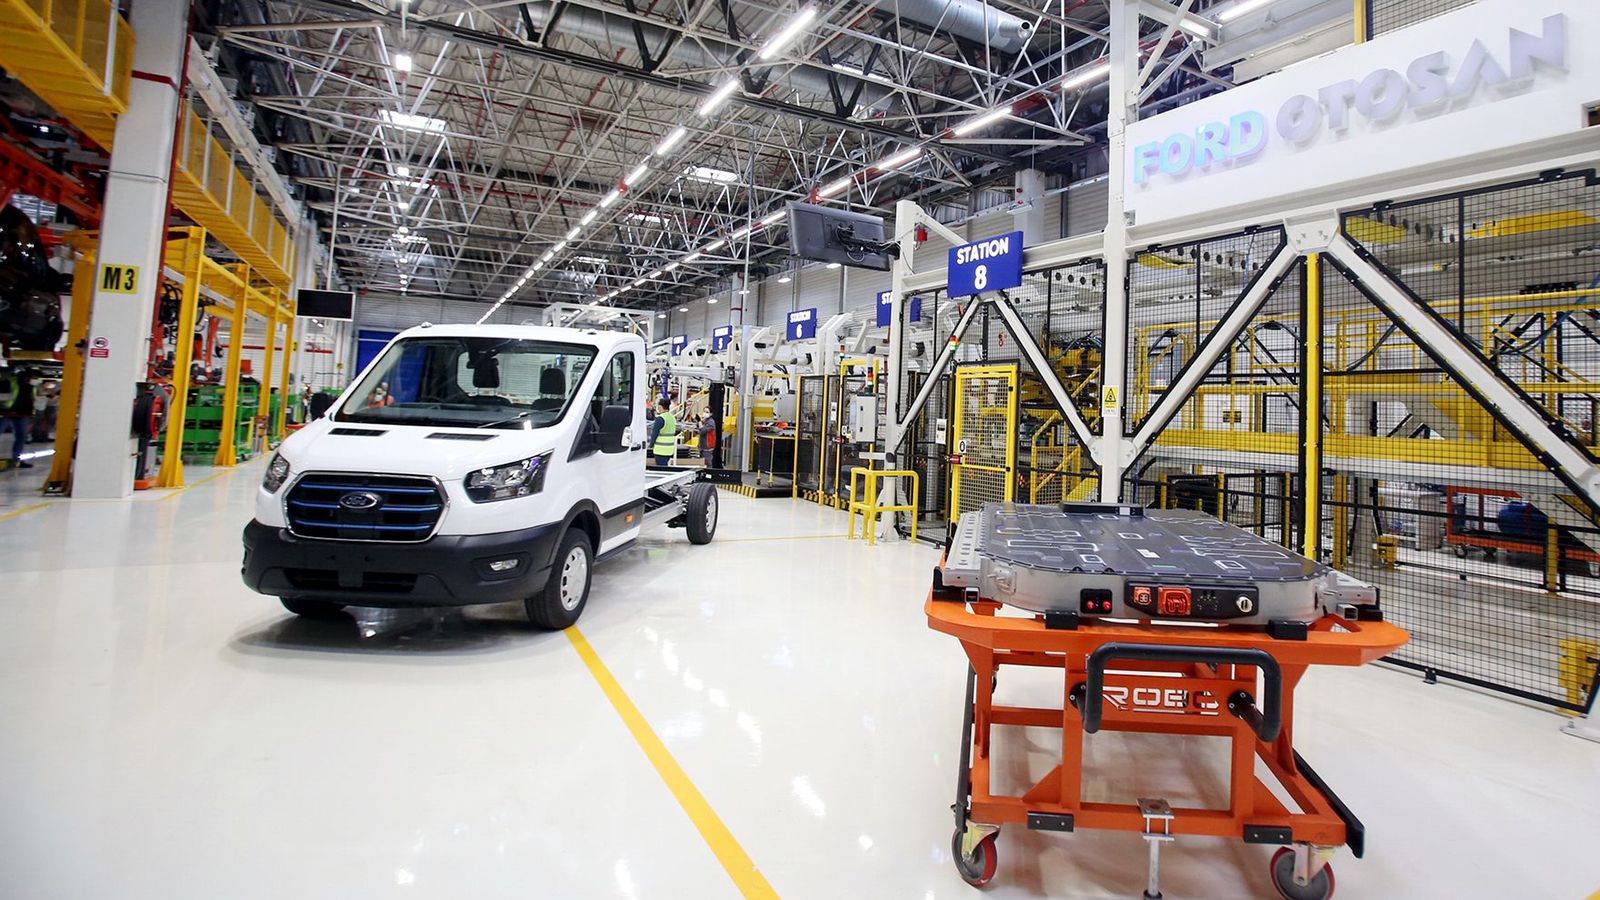 Η παραγωγή λαμβάνει χώρα στο εργοστάσιο της Ford Otosan (κοινοπραξία μεταξύ της Ford Motor Company και της Koc Holding) που βρίσκεται στην επαρχία Κοτζάελι της Τουρκίας.